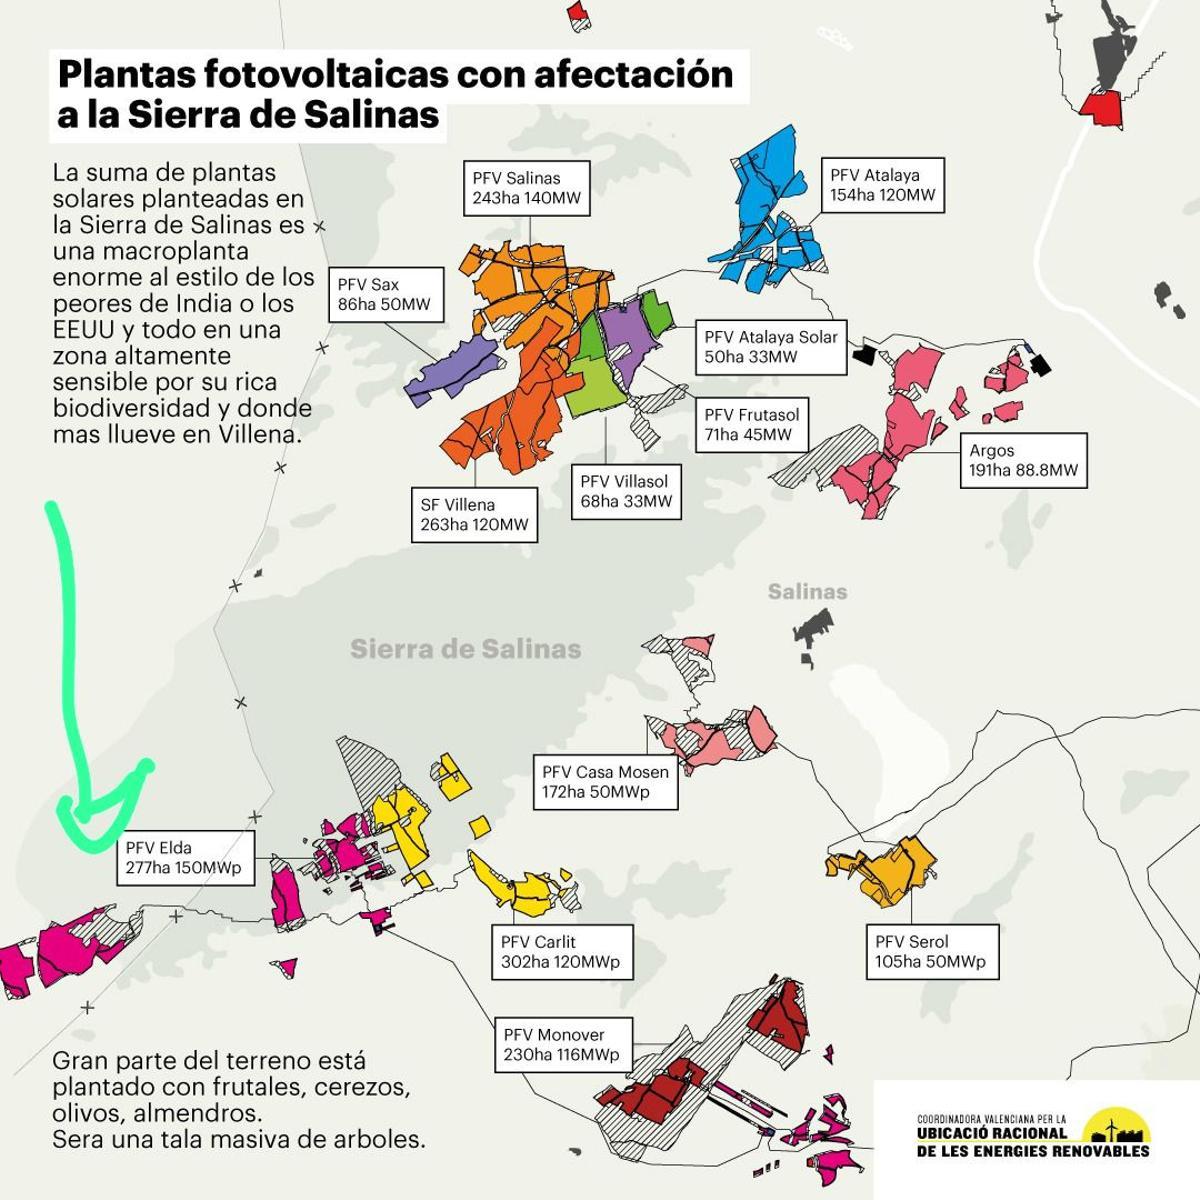 Plantas fotovoltaicas con afectación a la Sierra Salinas que se extiende por los términos municipales de Salinas, Villena, Pinoso y Yecla.